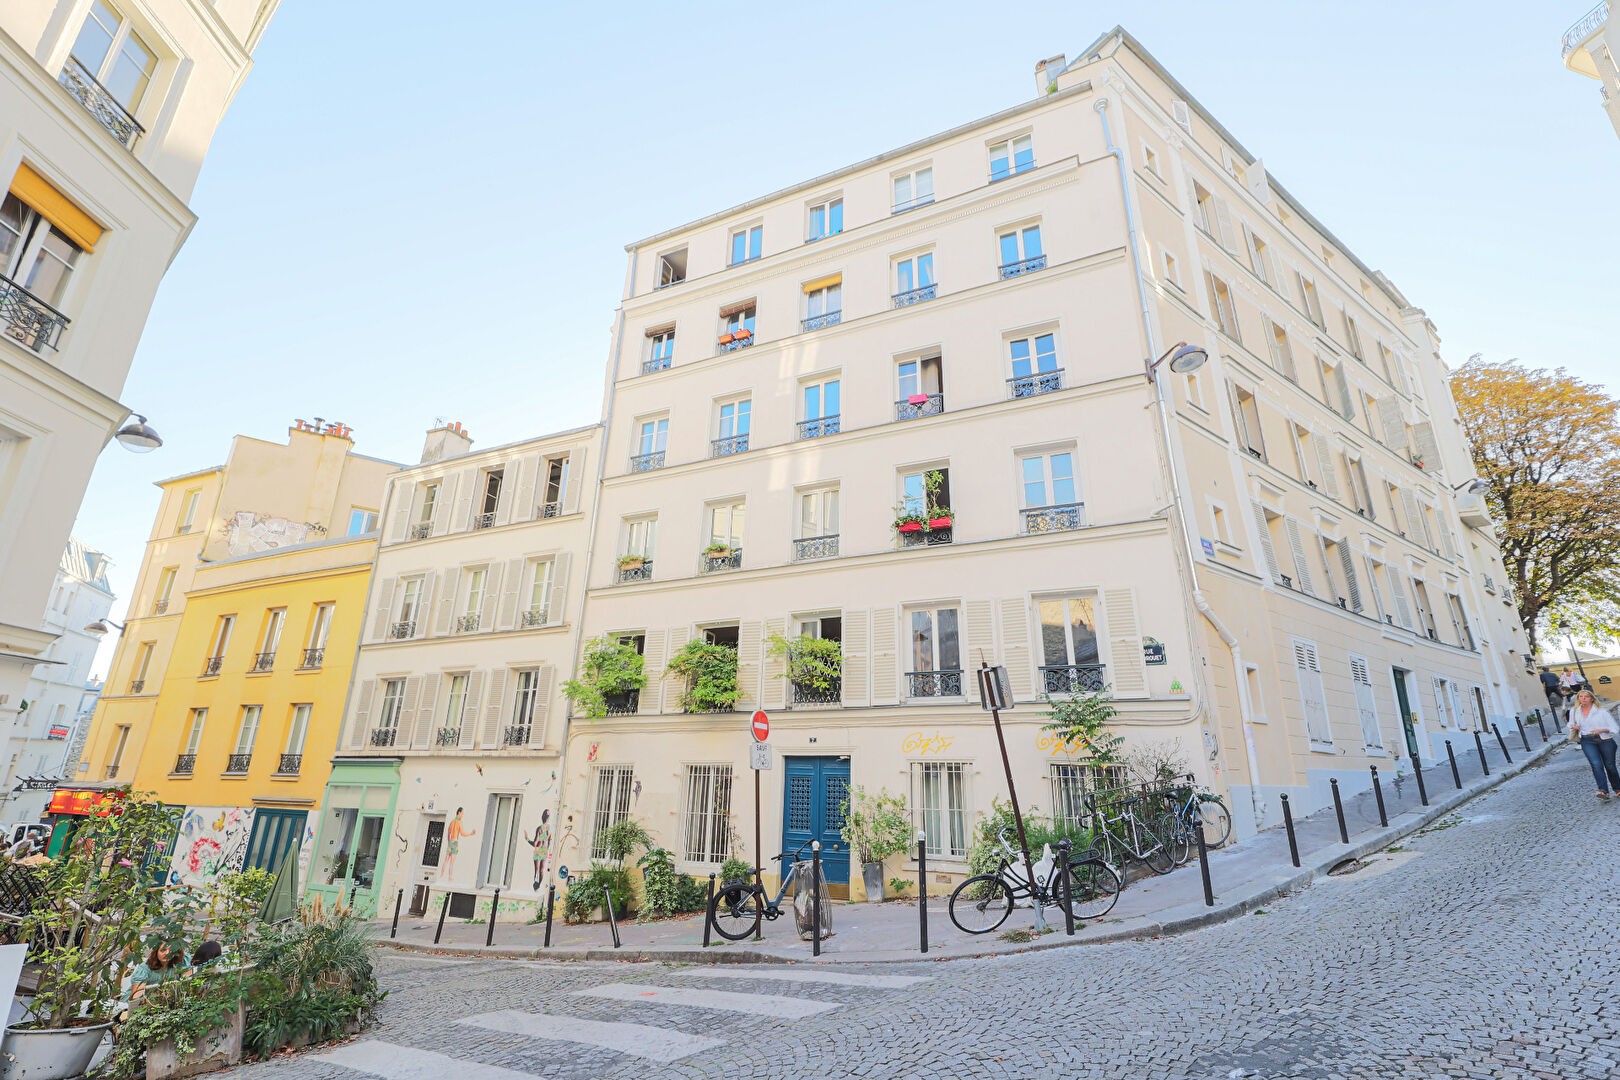 Vente Garage / Parking à Paris Butte-Montmartre 18e arrondissement 5 pièces